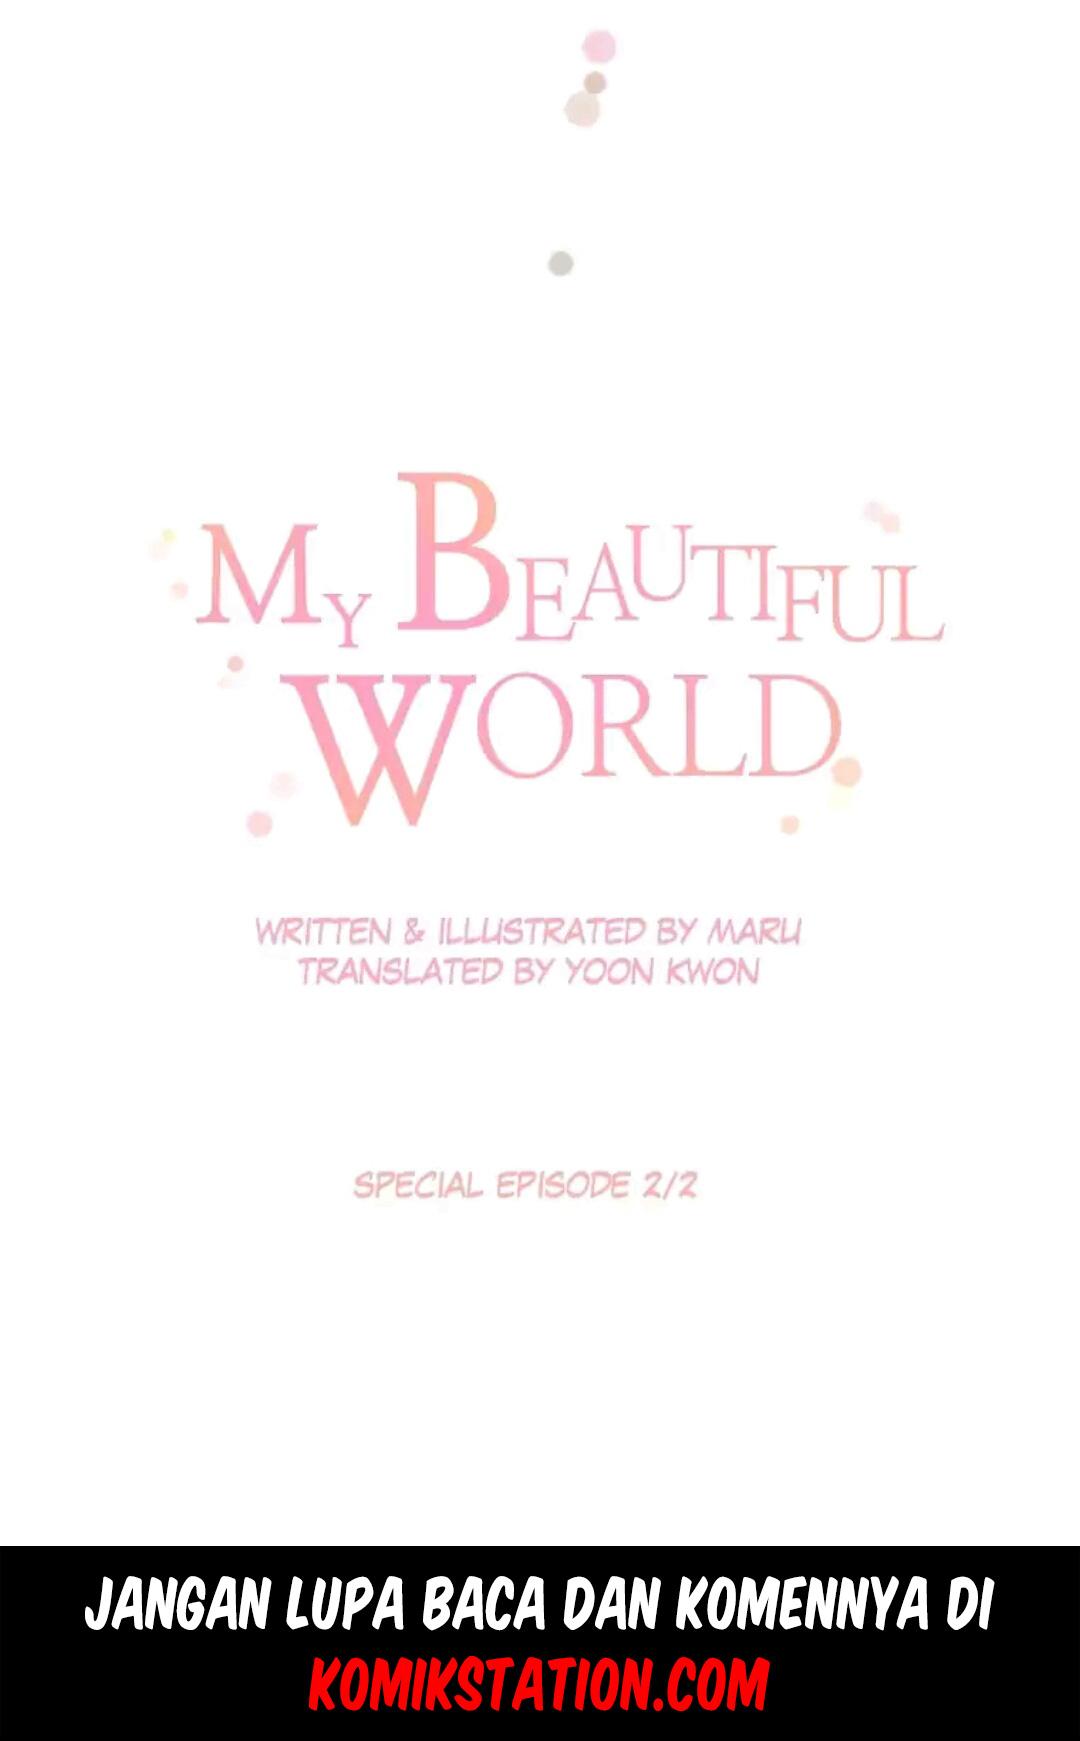 My Beautiful World Chapter 66.6